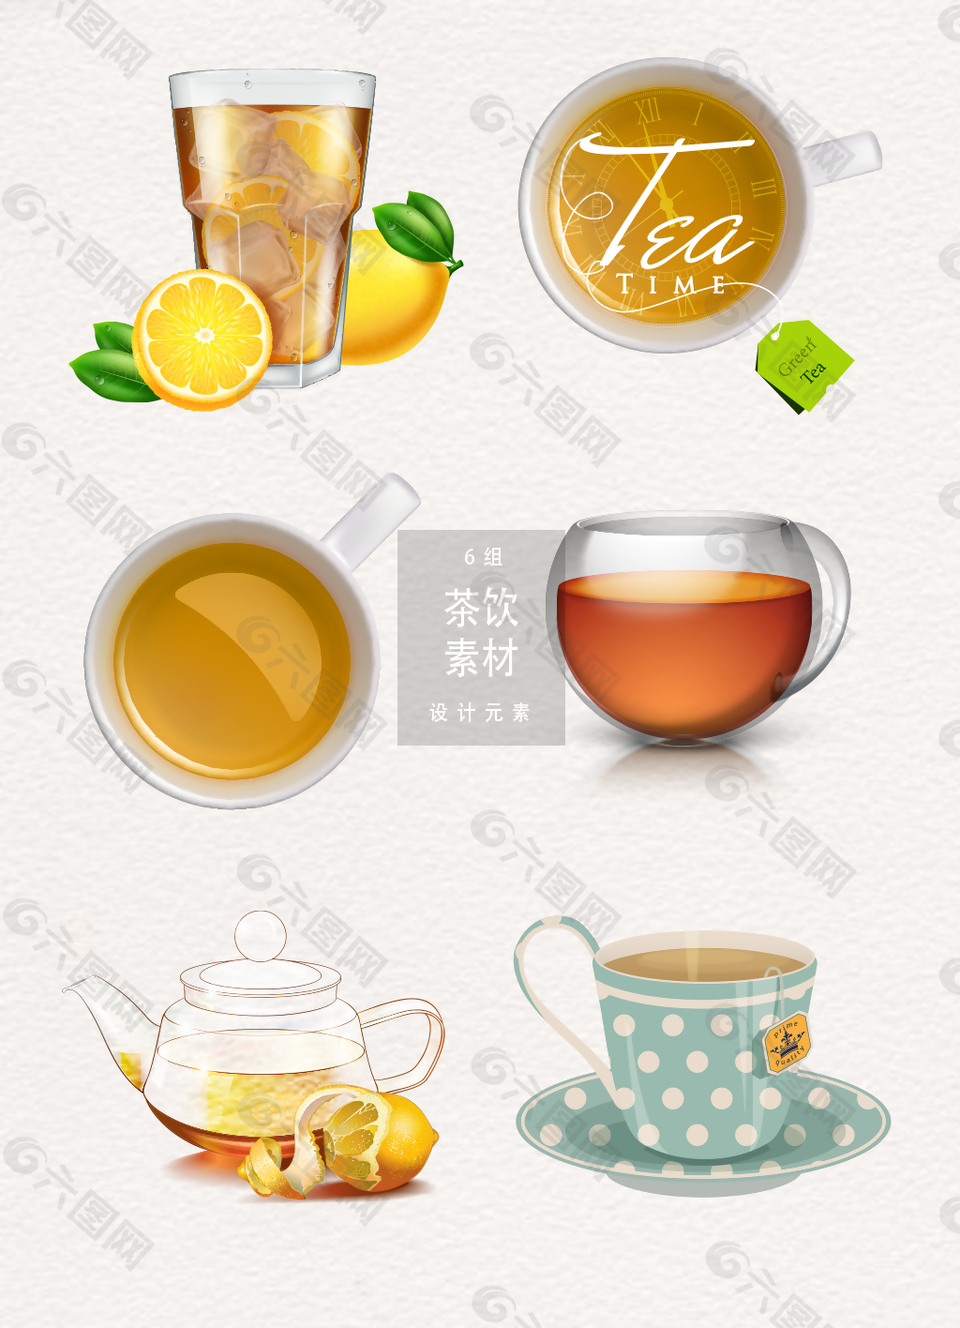 简约时尚茶叶茶饮装饰设计素材